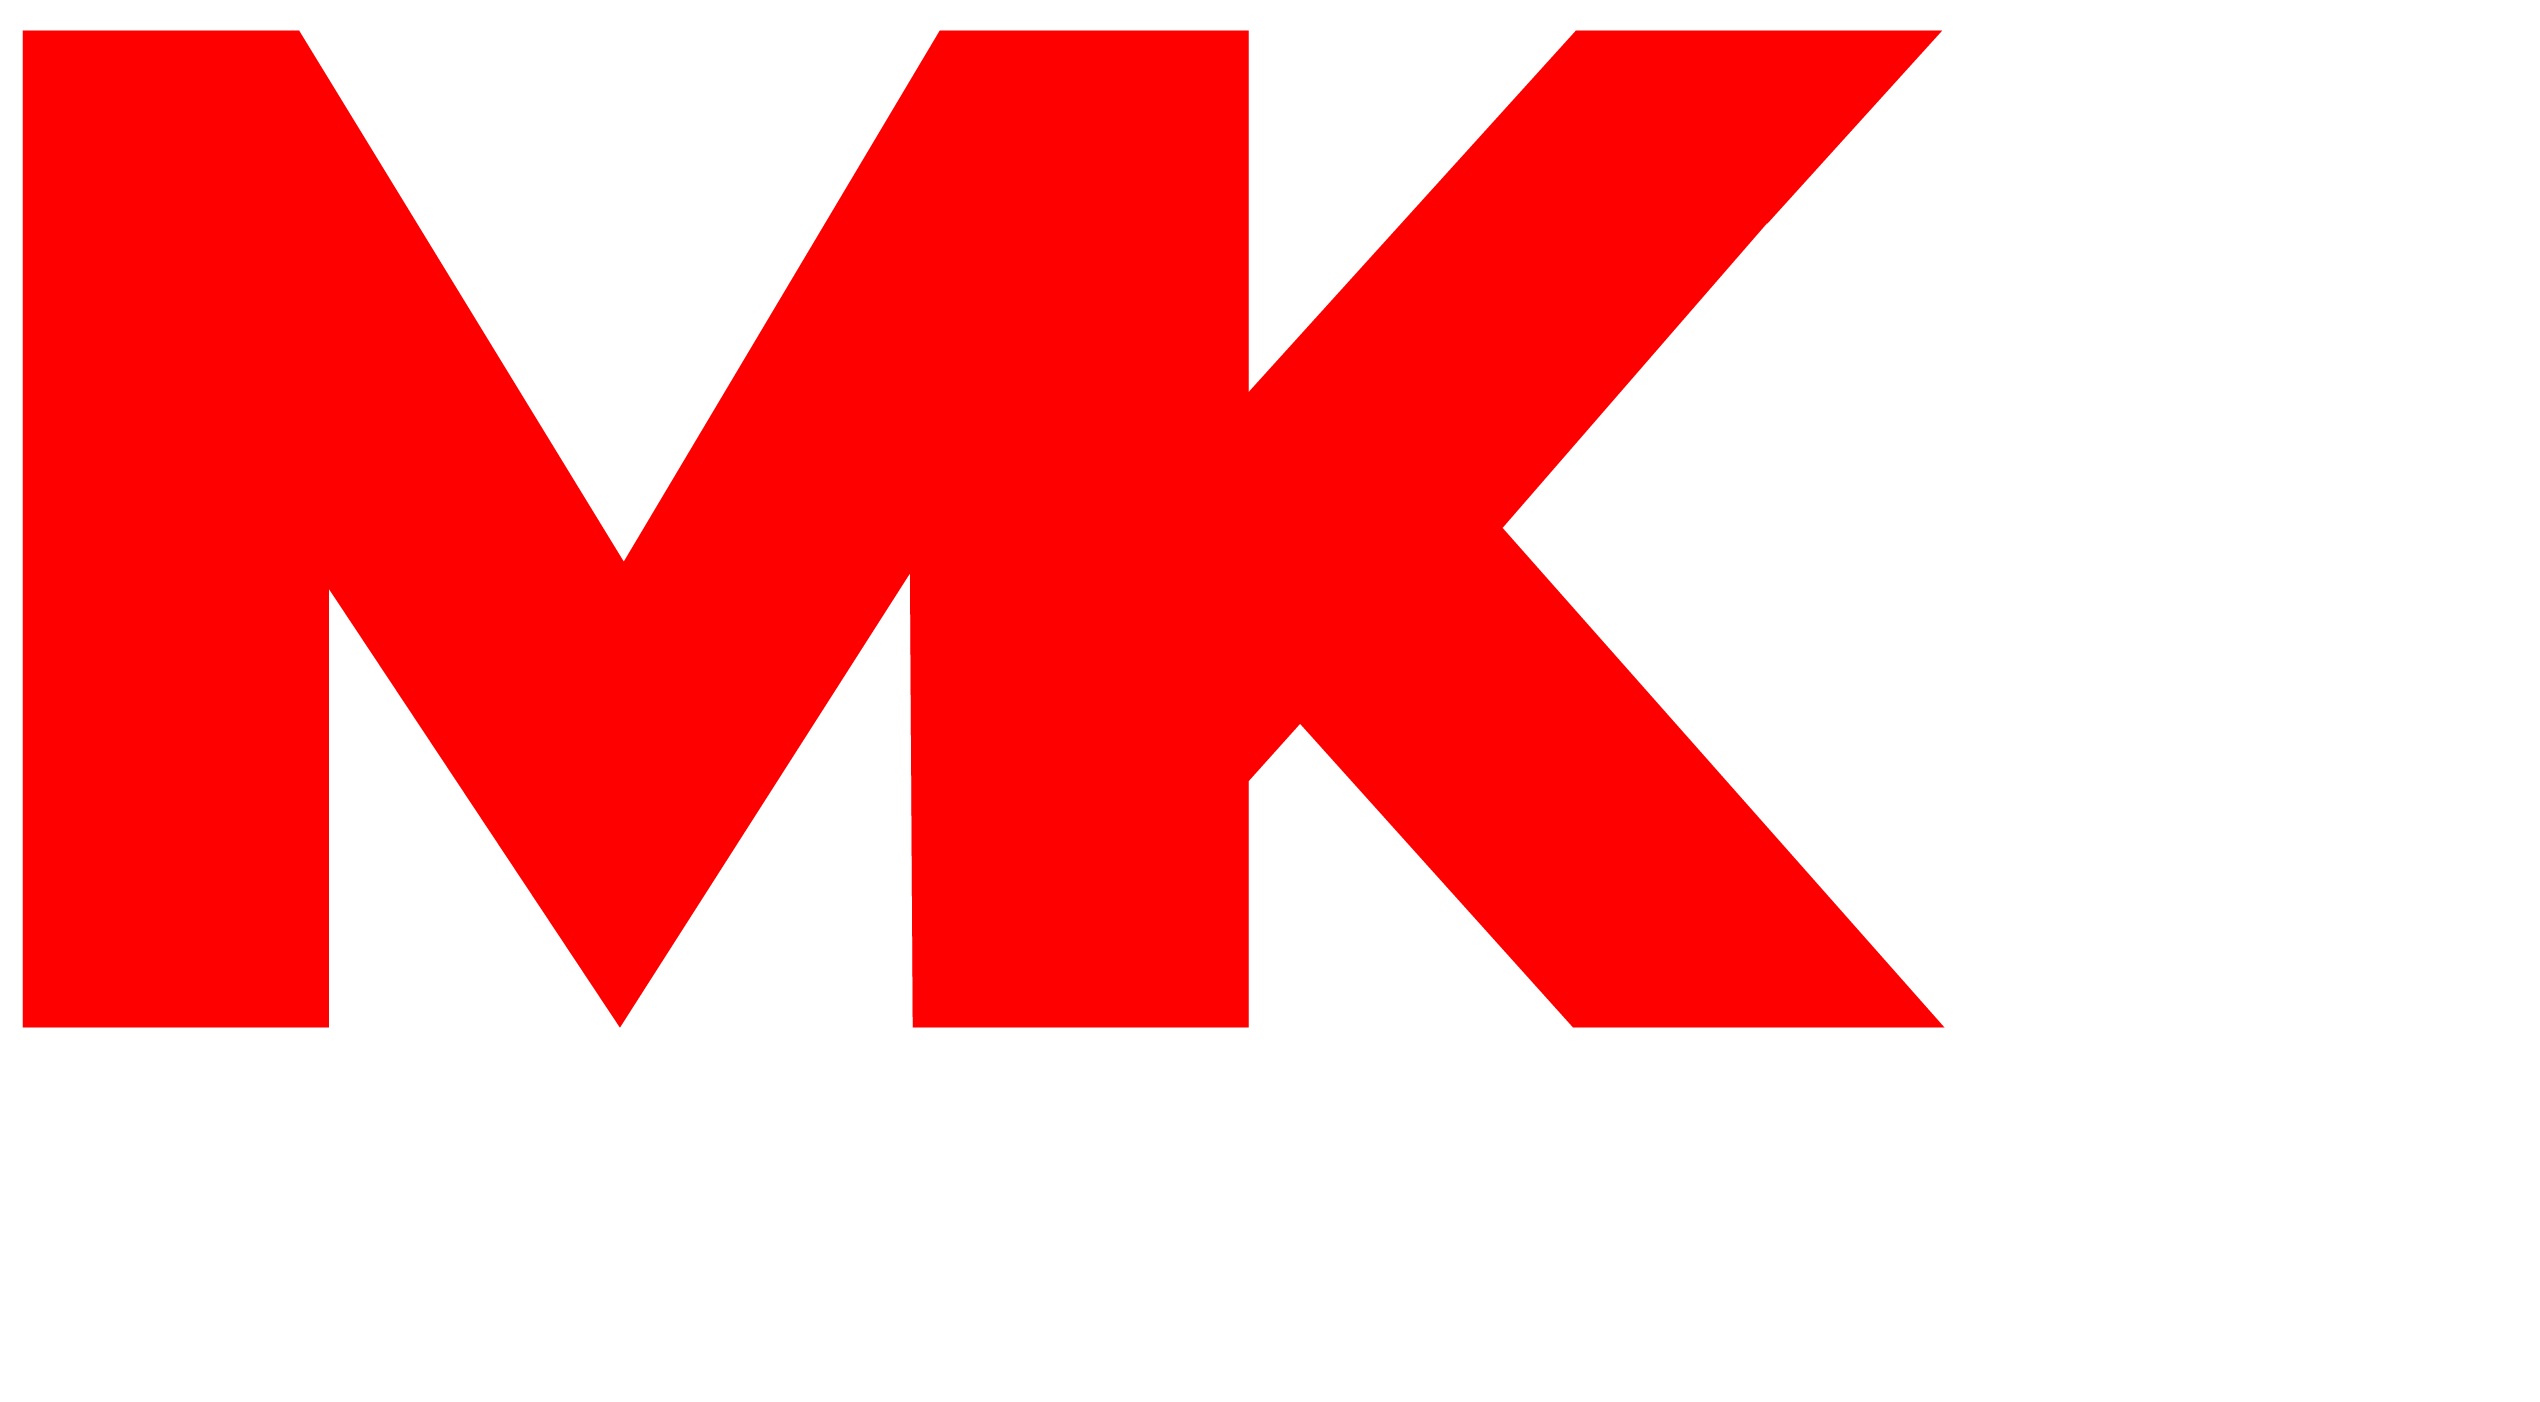 MK3 Industries